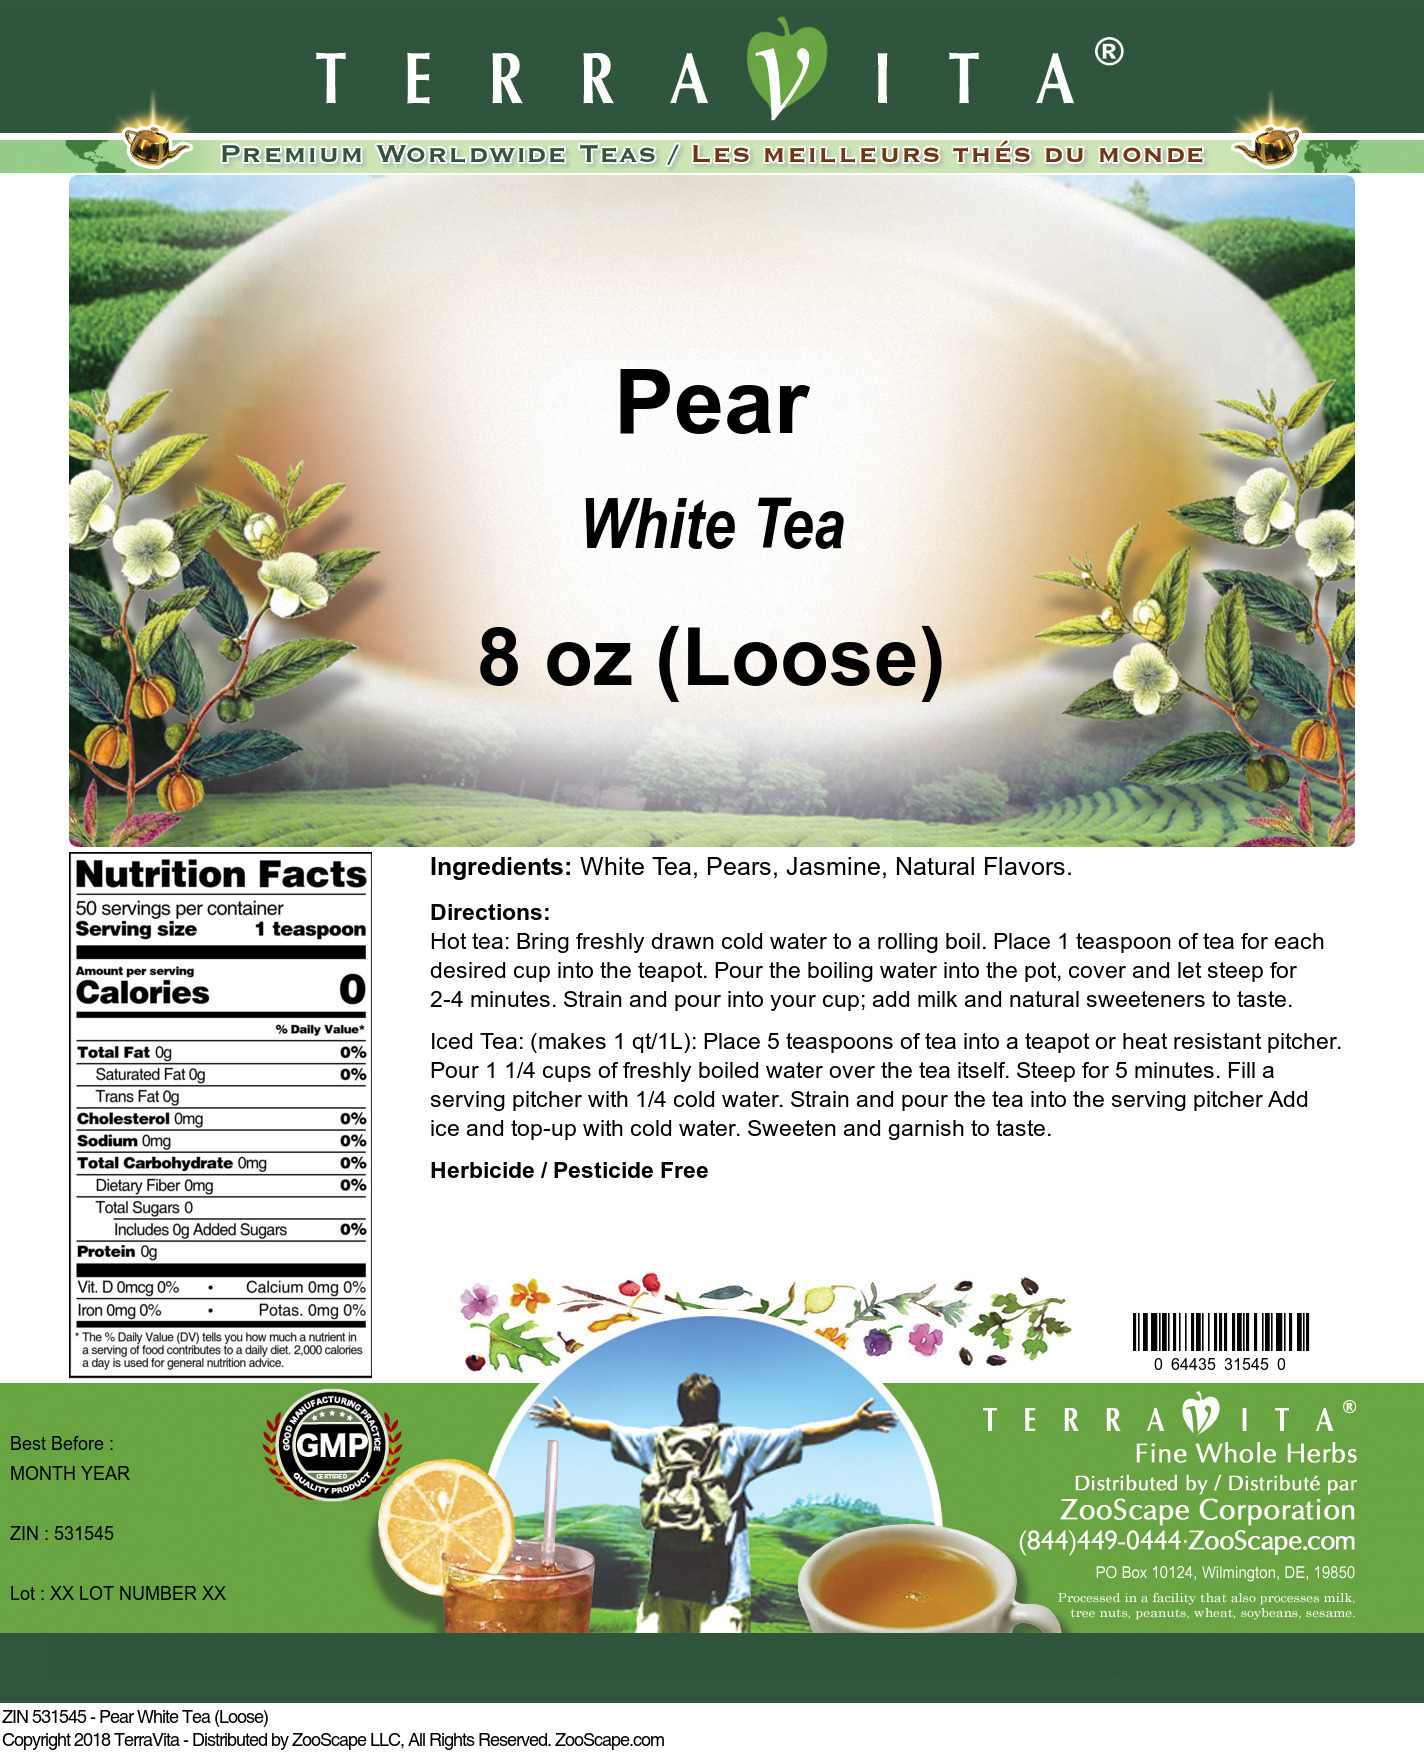 Pear White Tea (Loose) - Label